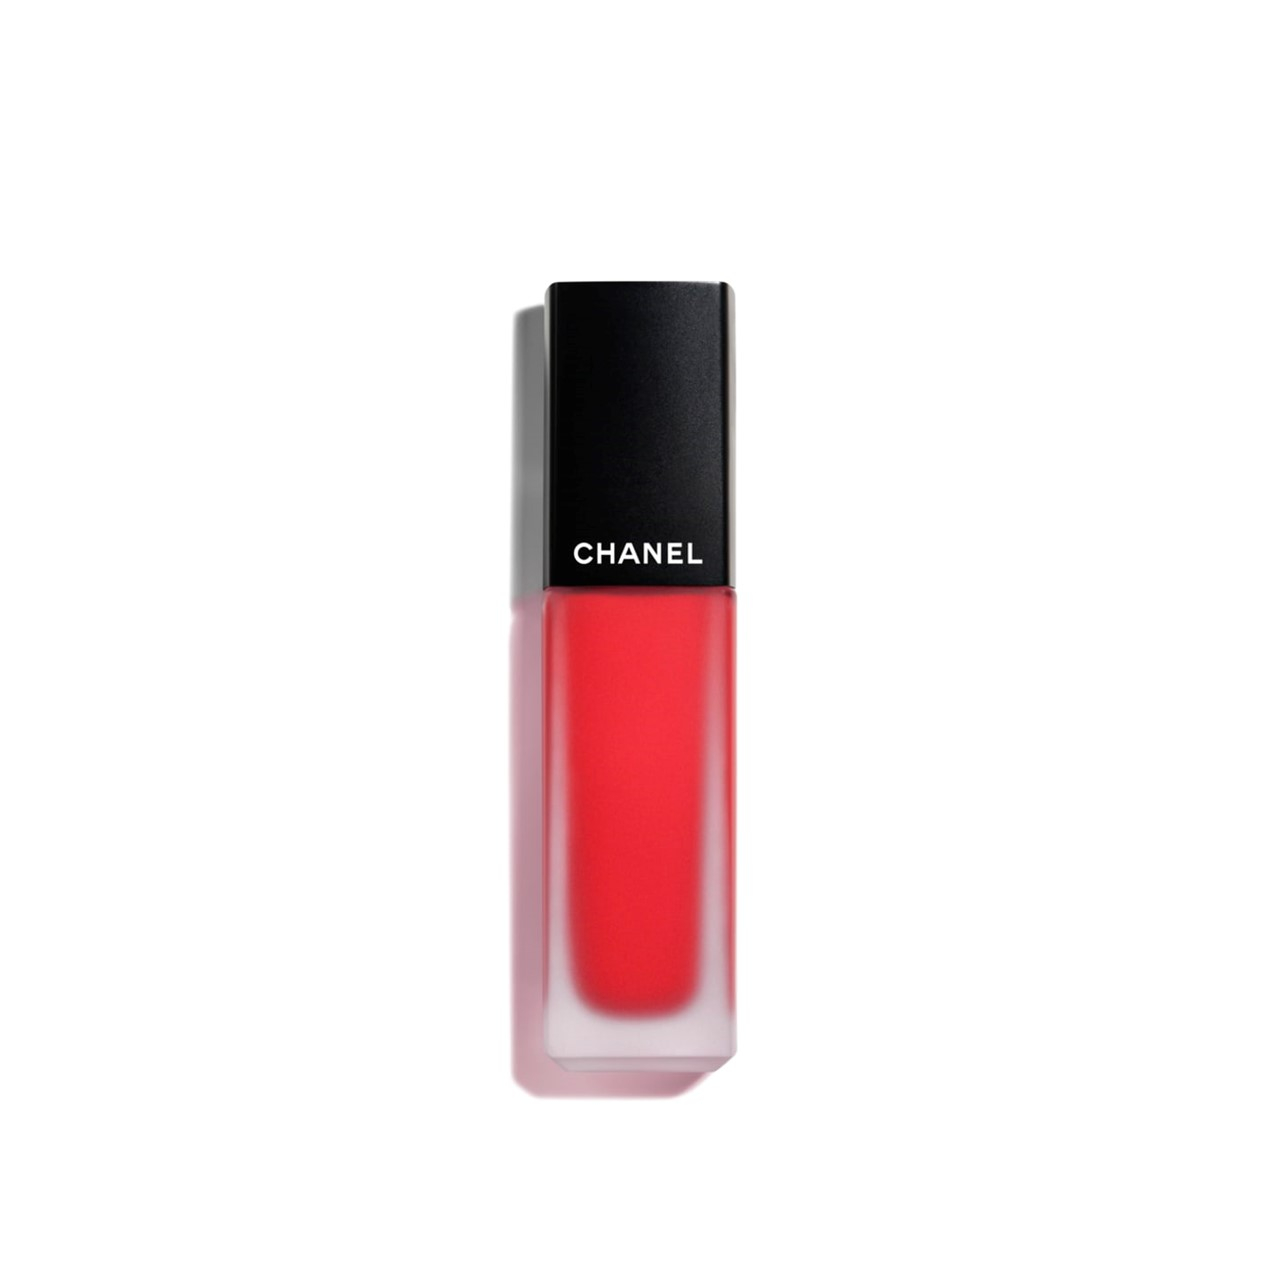 CHANEL Rouge Allure Ink Fusion Intense Matte Liquid Lip Colour